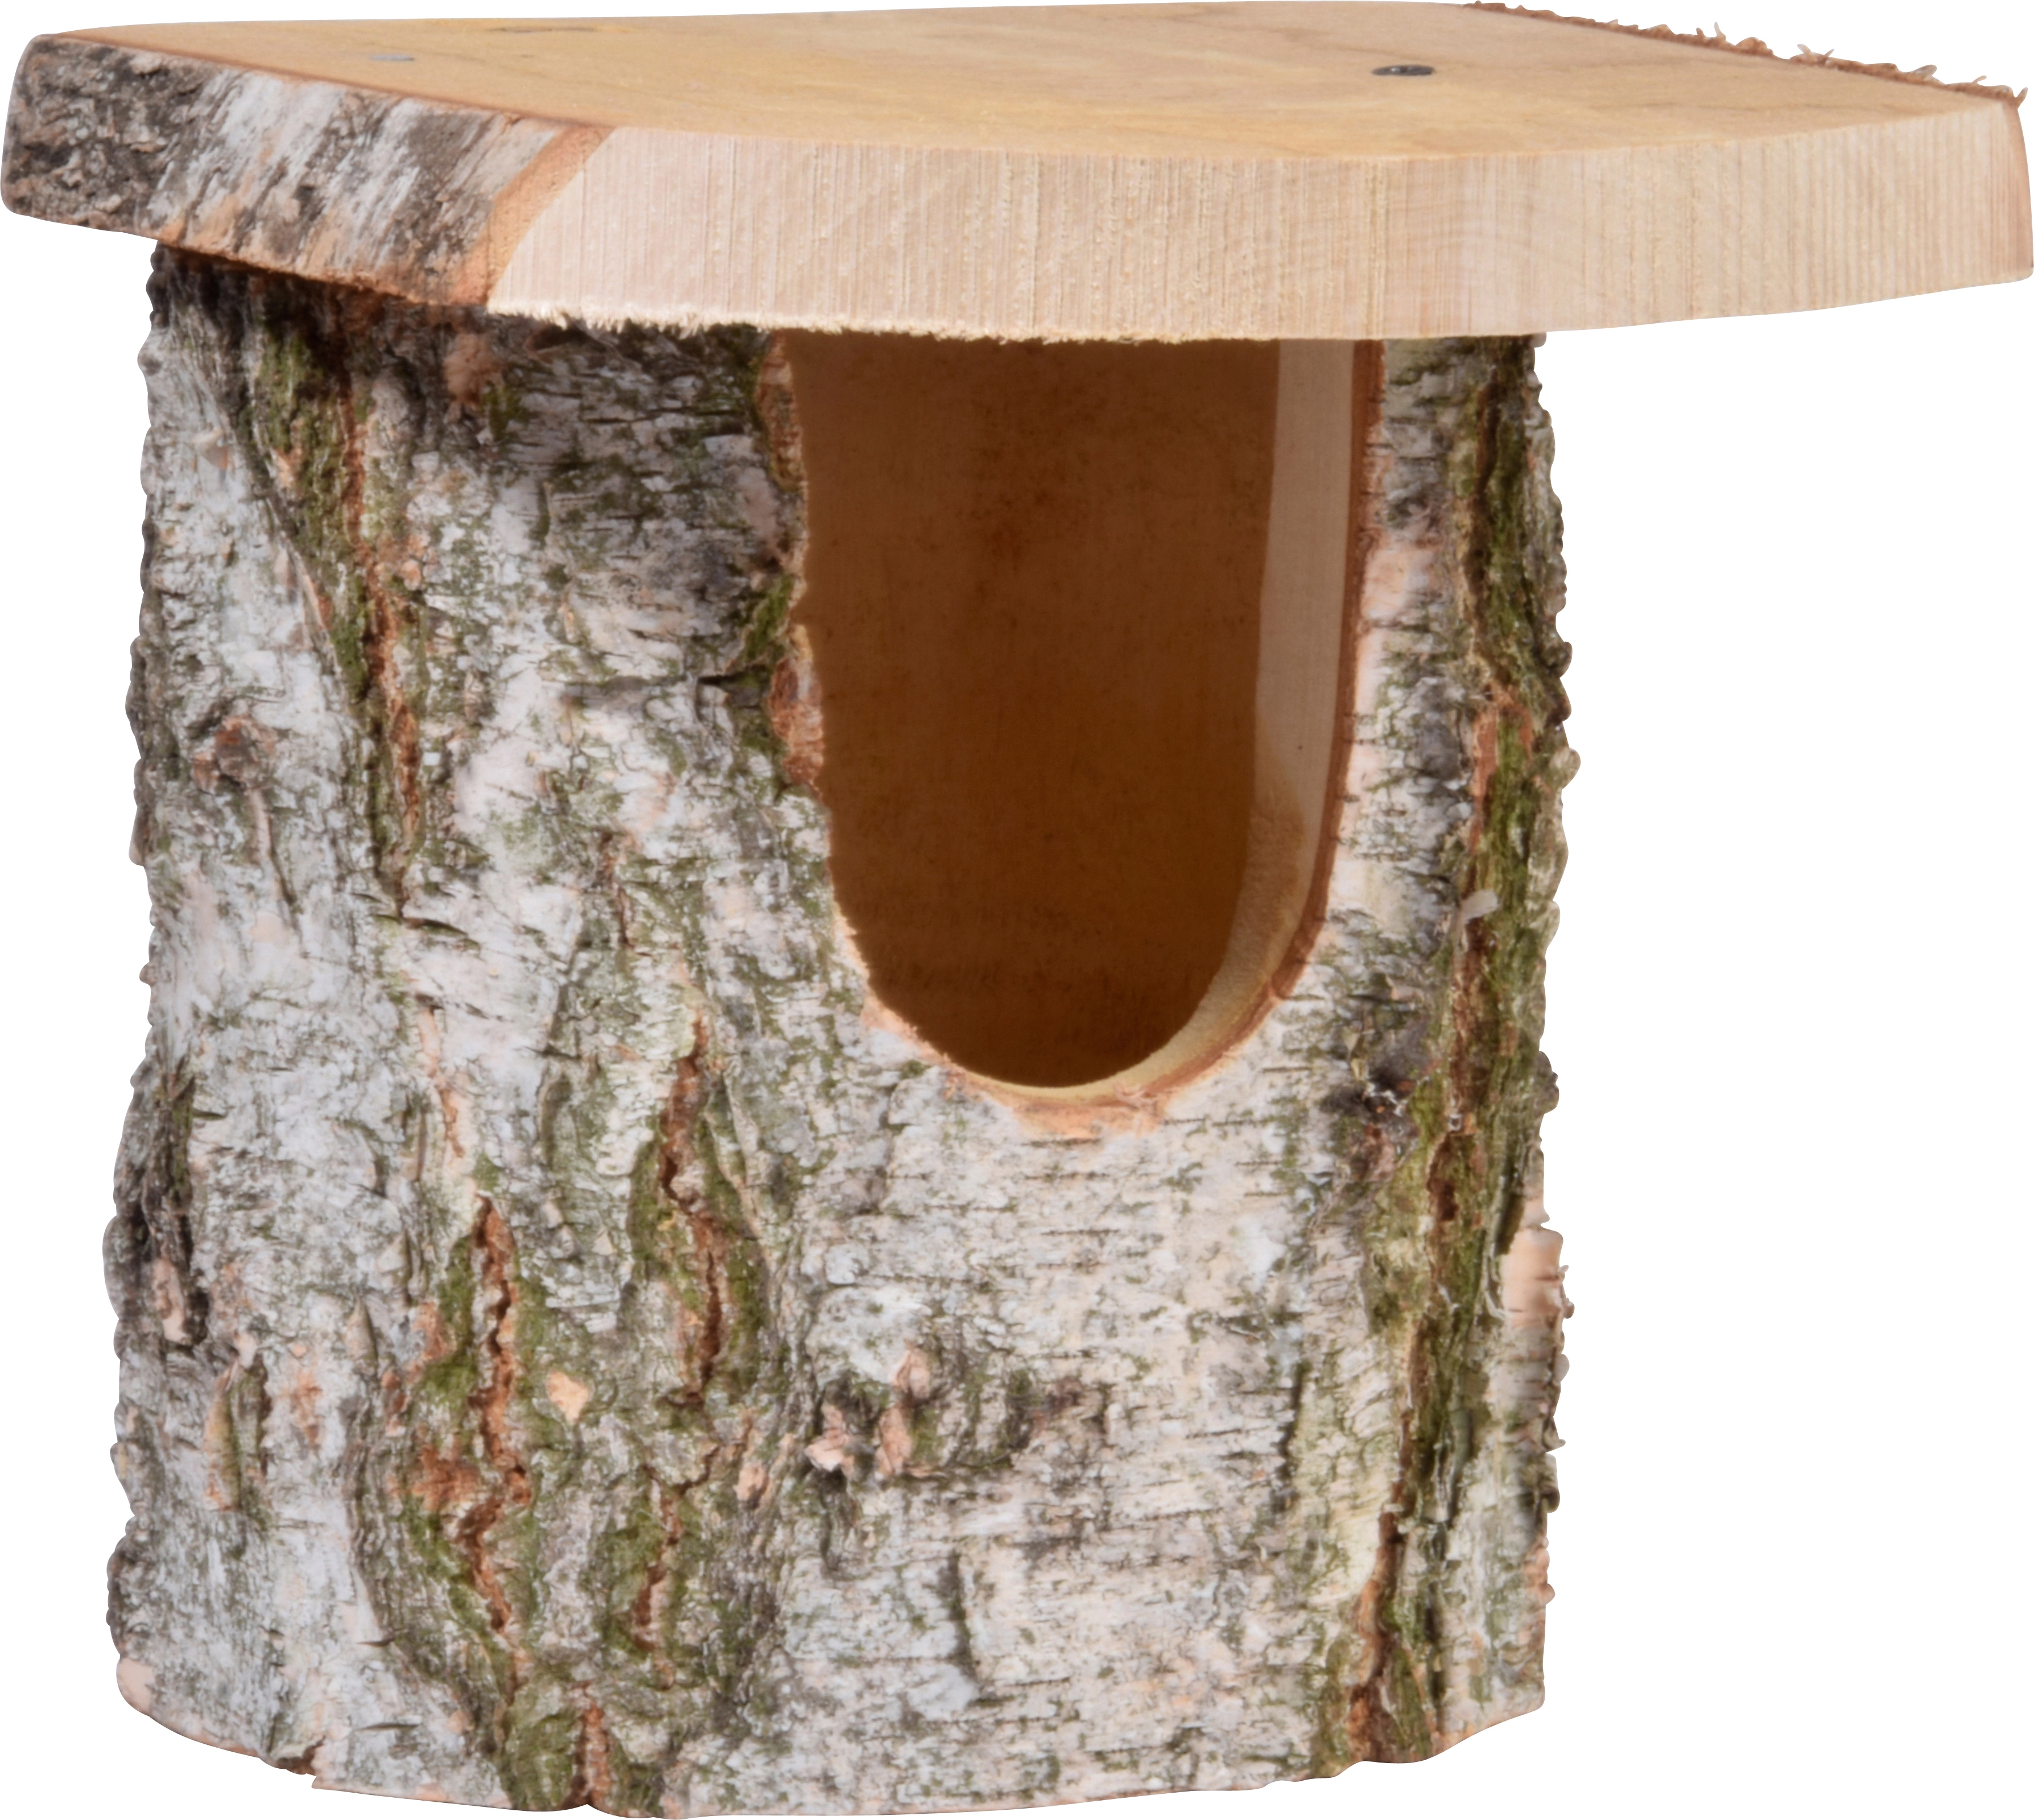 Marderschutz Räuberschutz für Nistkästen aus Holz